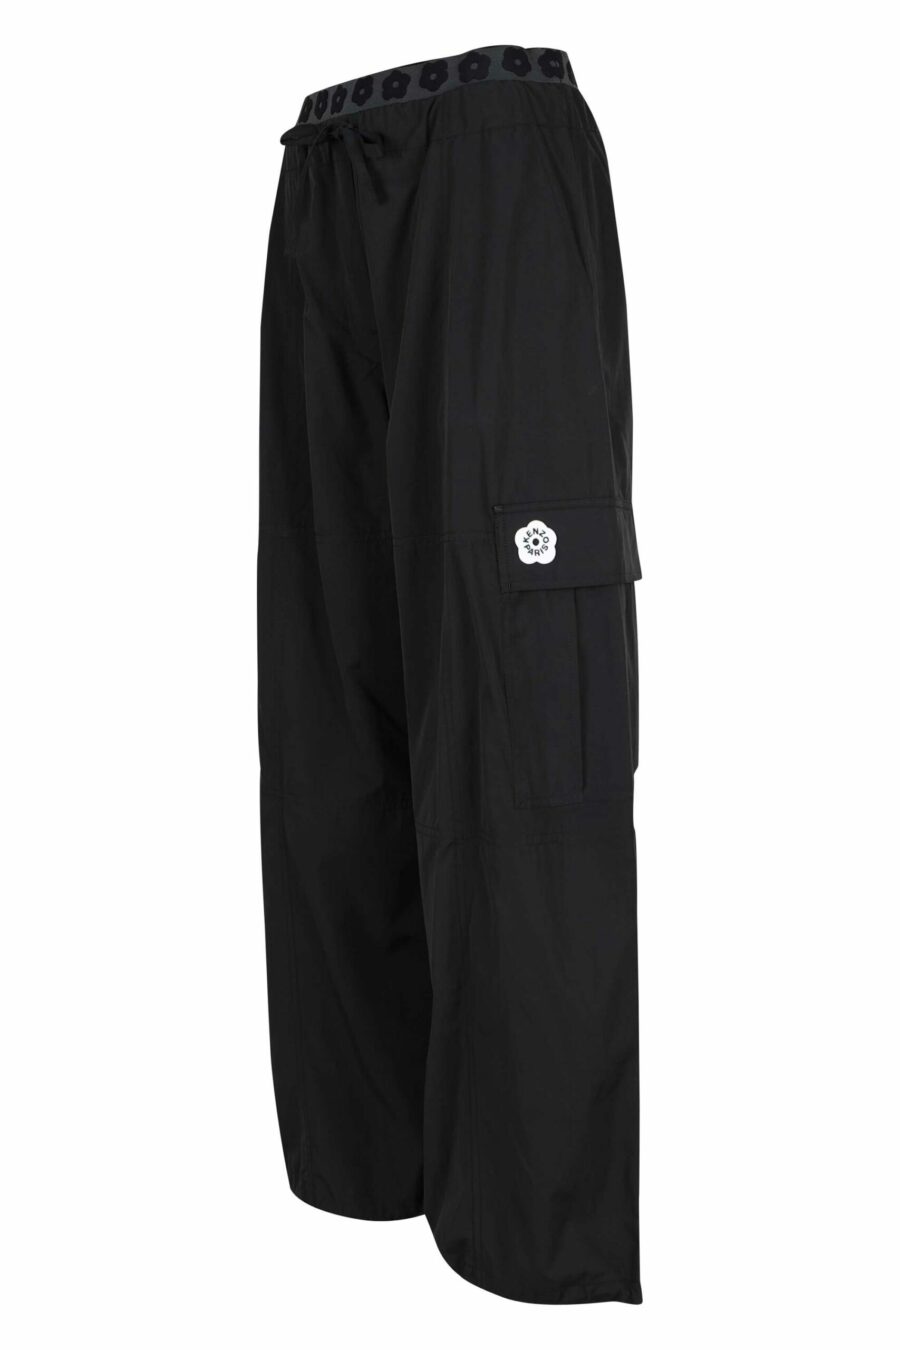 Pantalon cargo noir avec logo "boke flower" - 3612230658301 1 à l'échelle